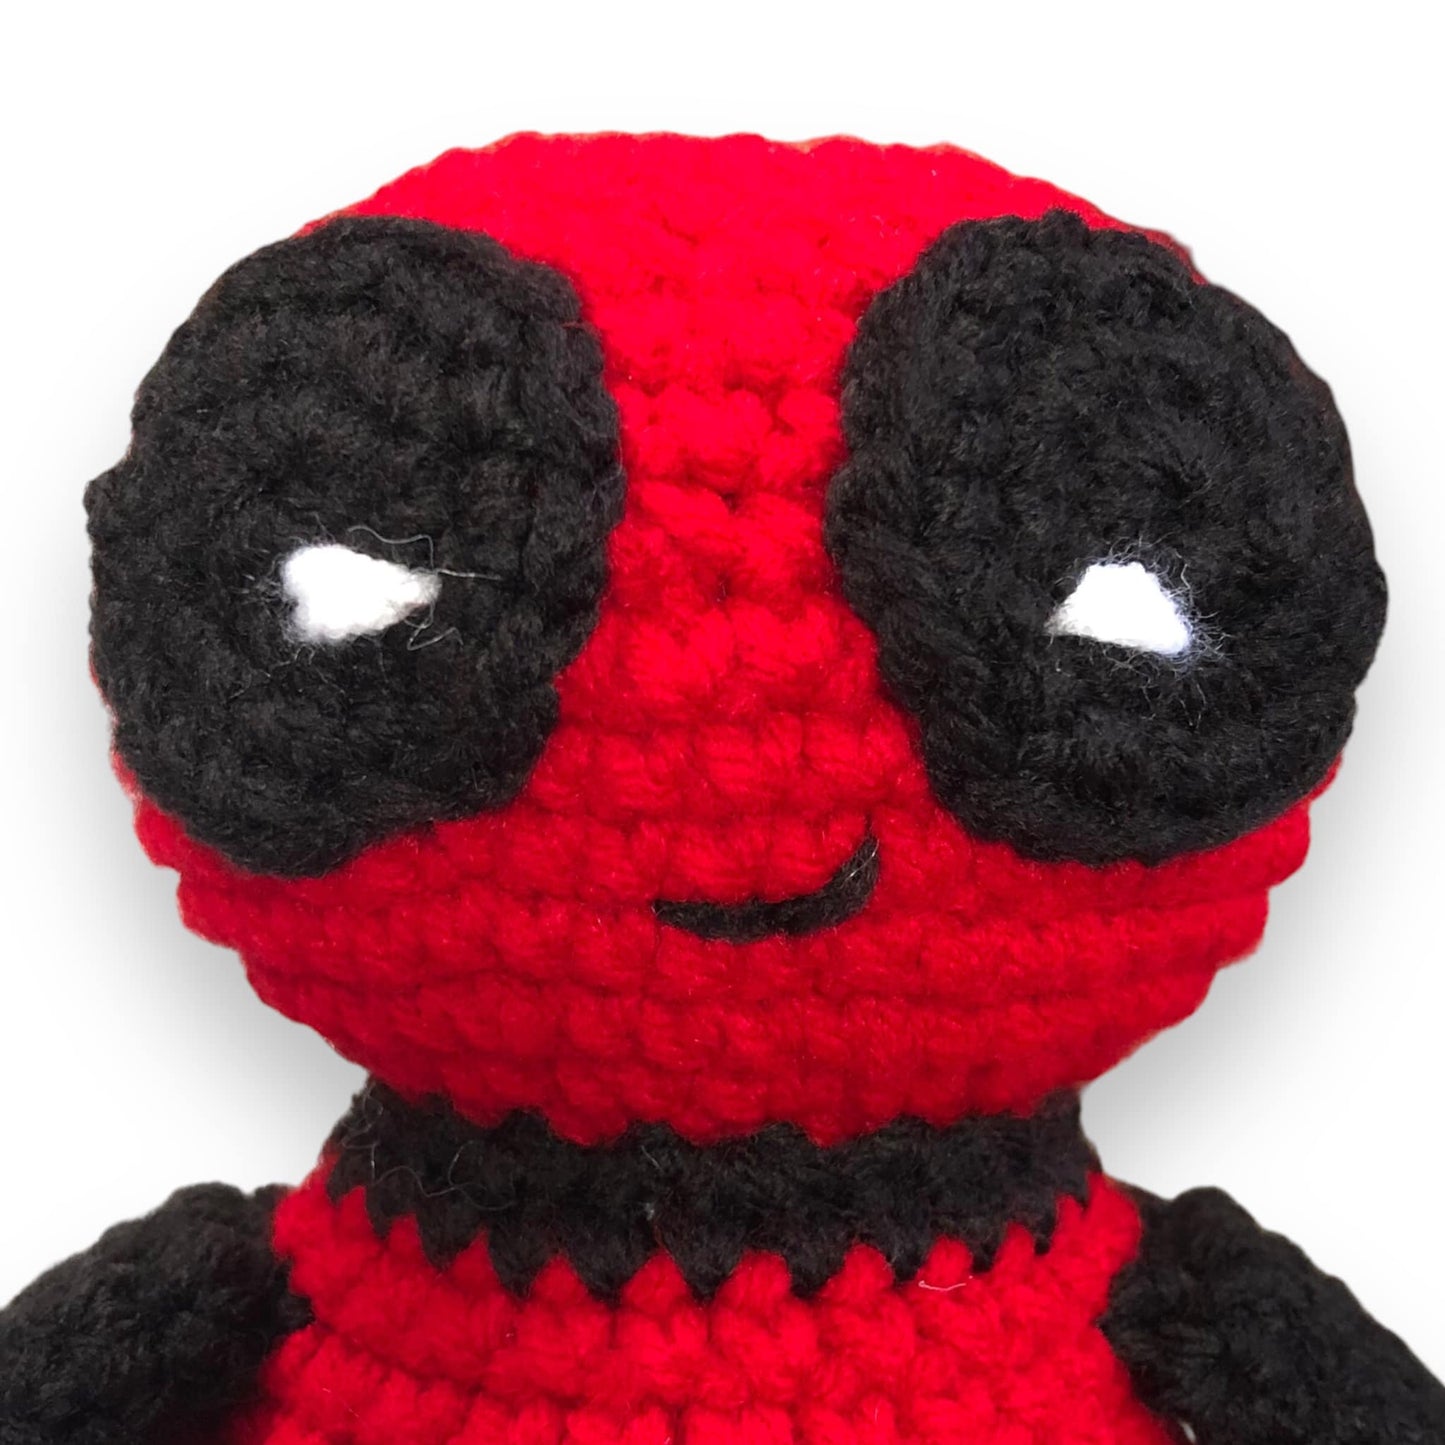 PATTERN: Crochet Deadpool with Booty PDF